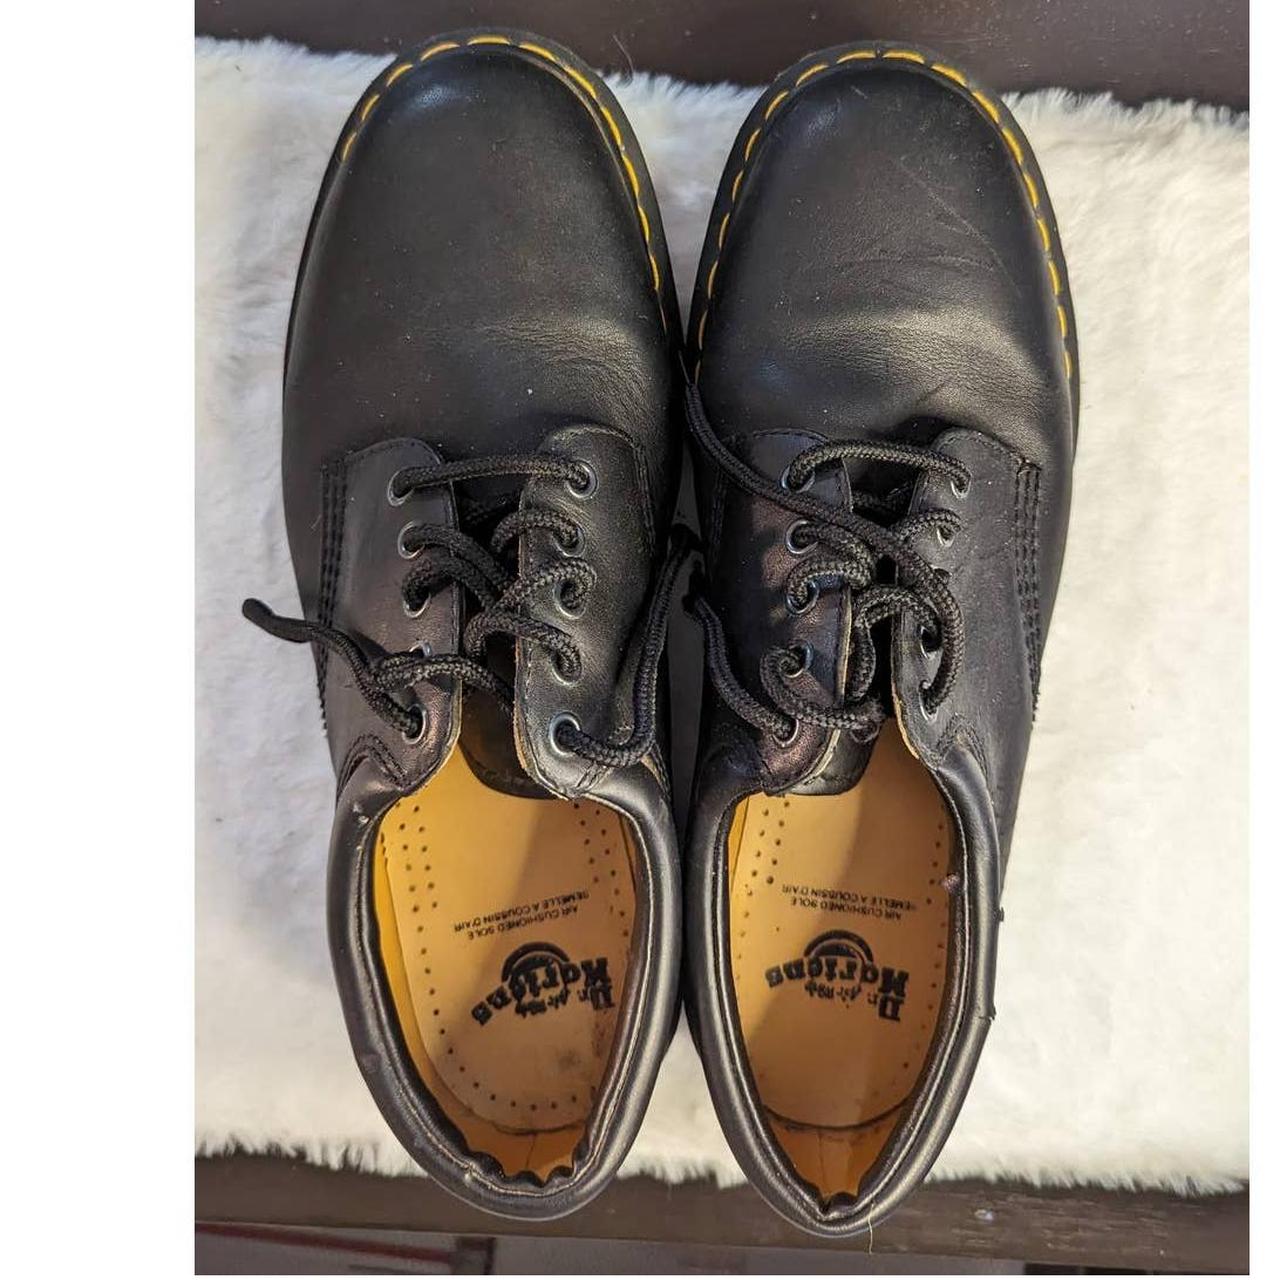 Dr Martens Men's Shoes Size 13 Black In very... - Depop